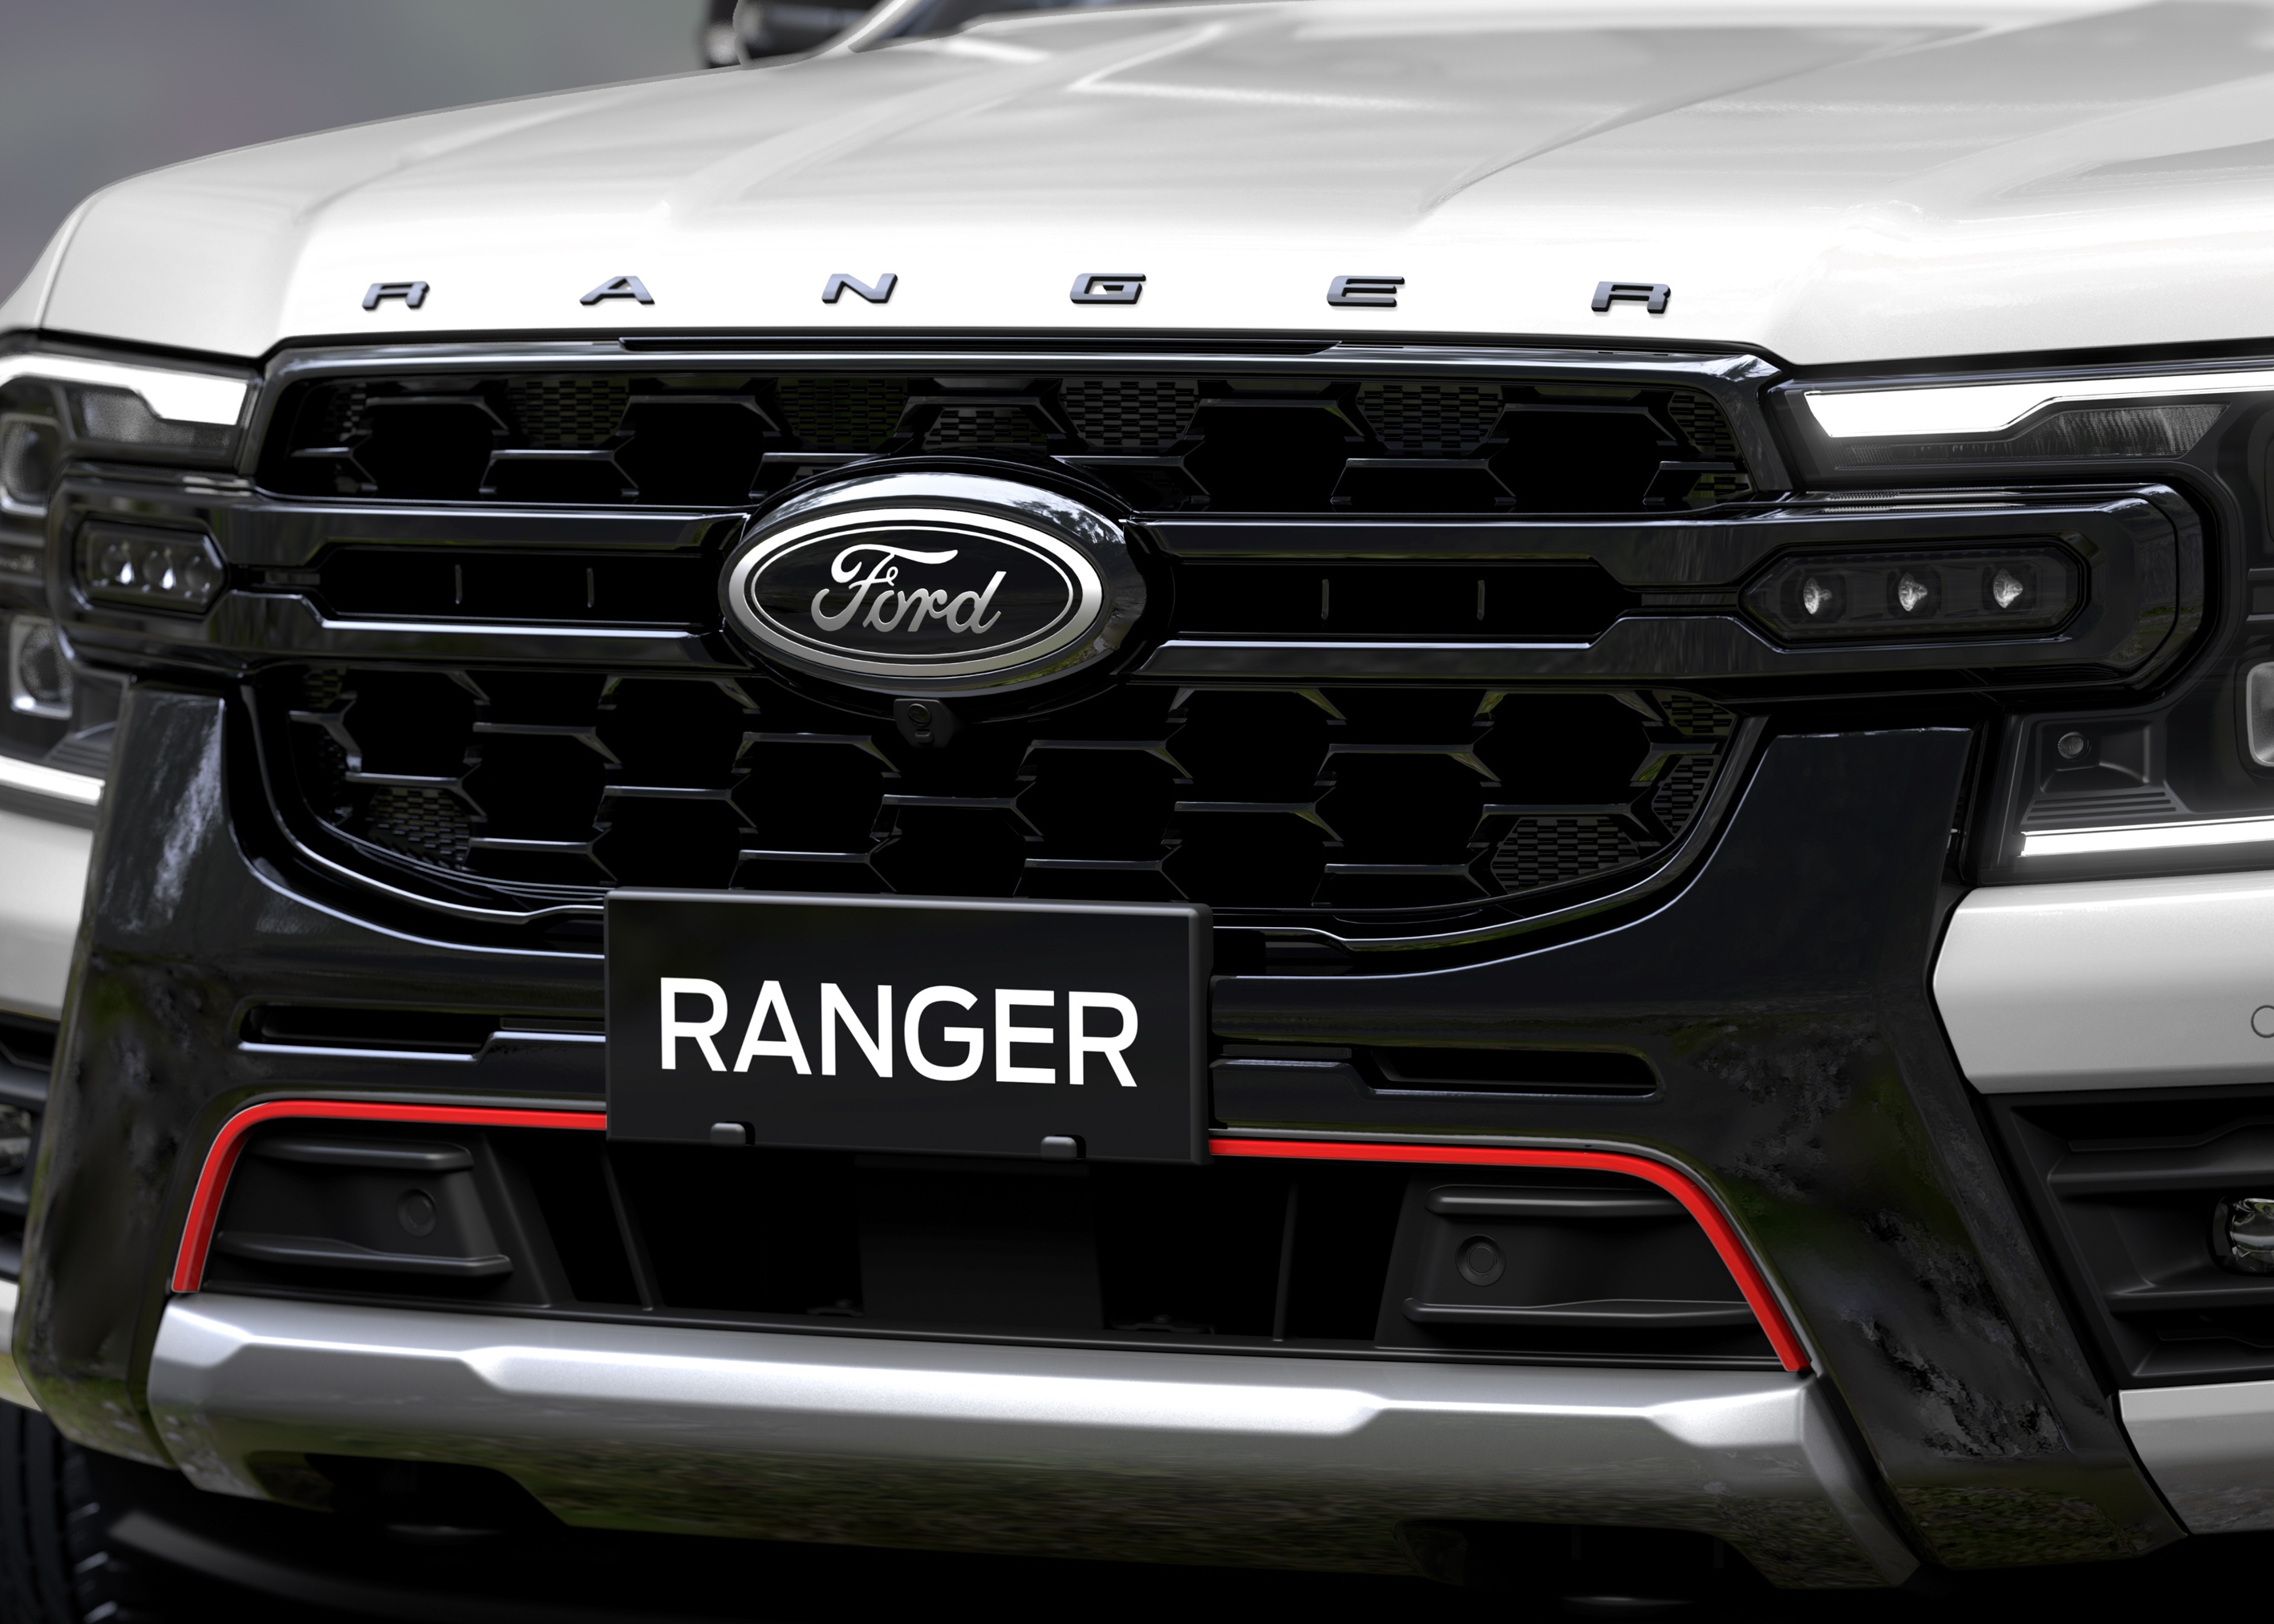 Ford Ranger Stormtrak bán tại Việt Nam có thanh thể thao, đèn trợ sáng - ảnh 2